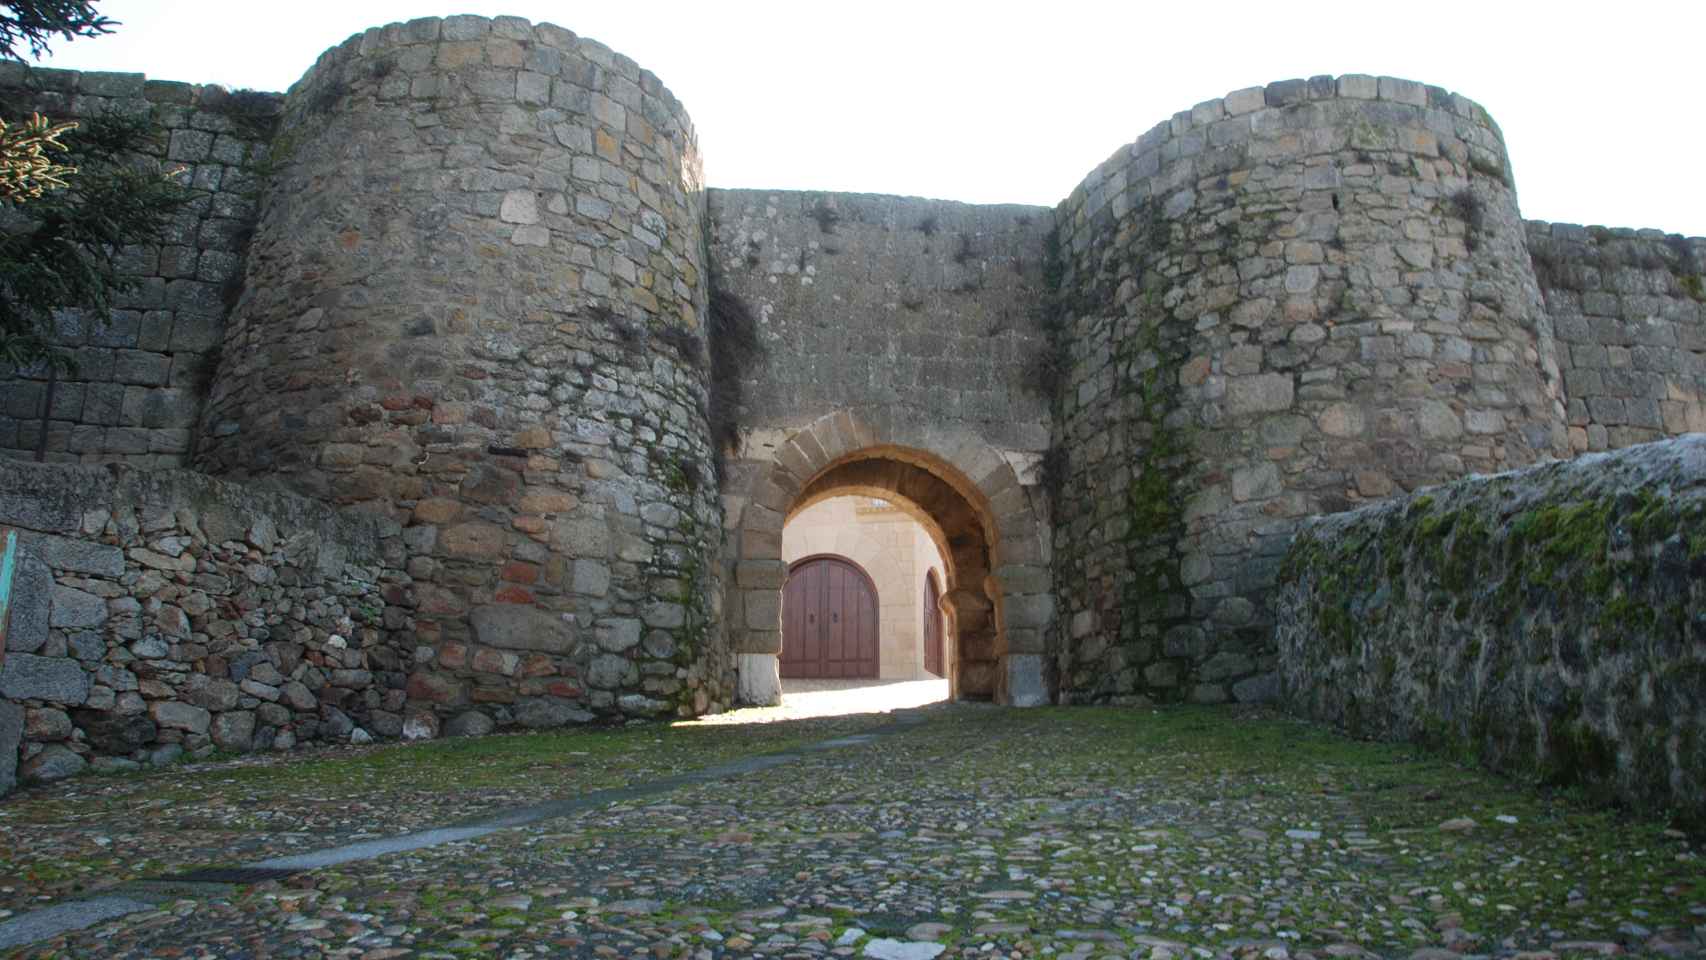 Puerta de acceso en la muralla de Ledesma